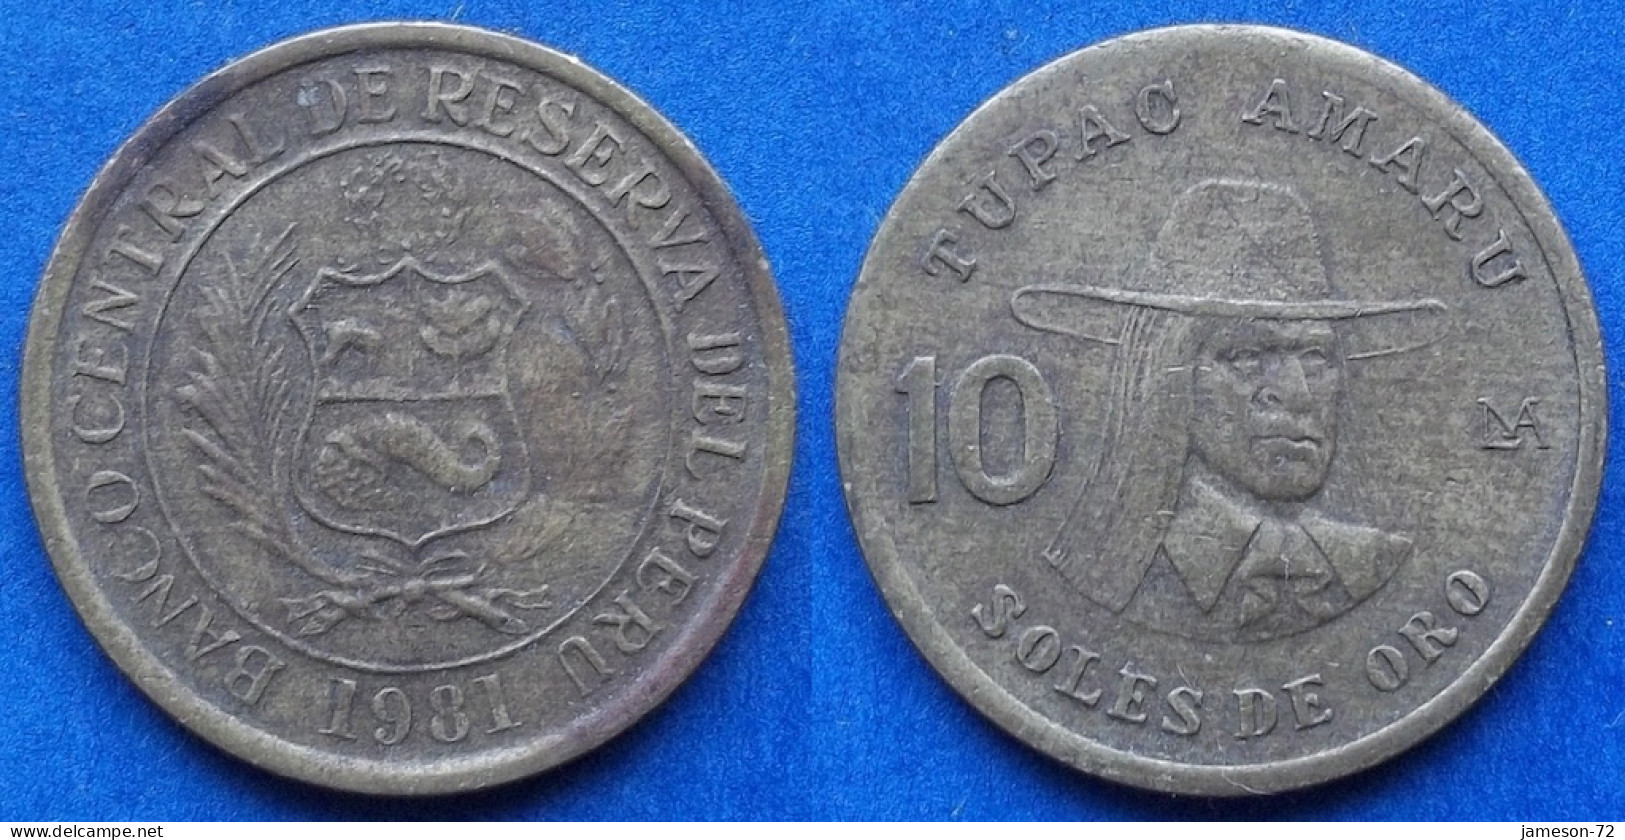 PERU - 10 Soles 1981 "Tupac Amaru" KM# 272.2 Decimal Coinage (1893-1986) - Edelweiss Coins - Peru